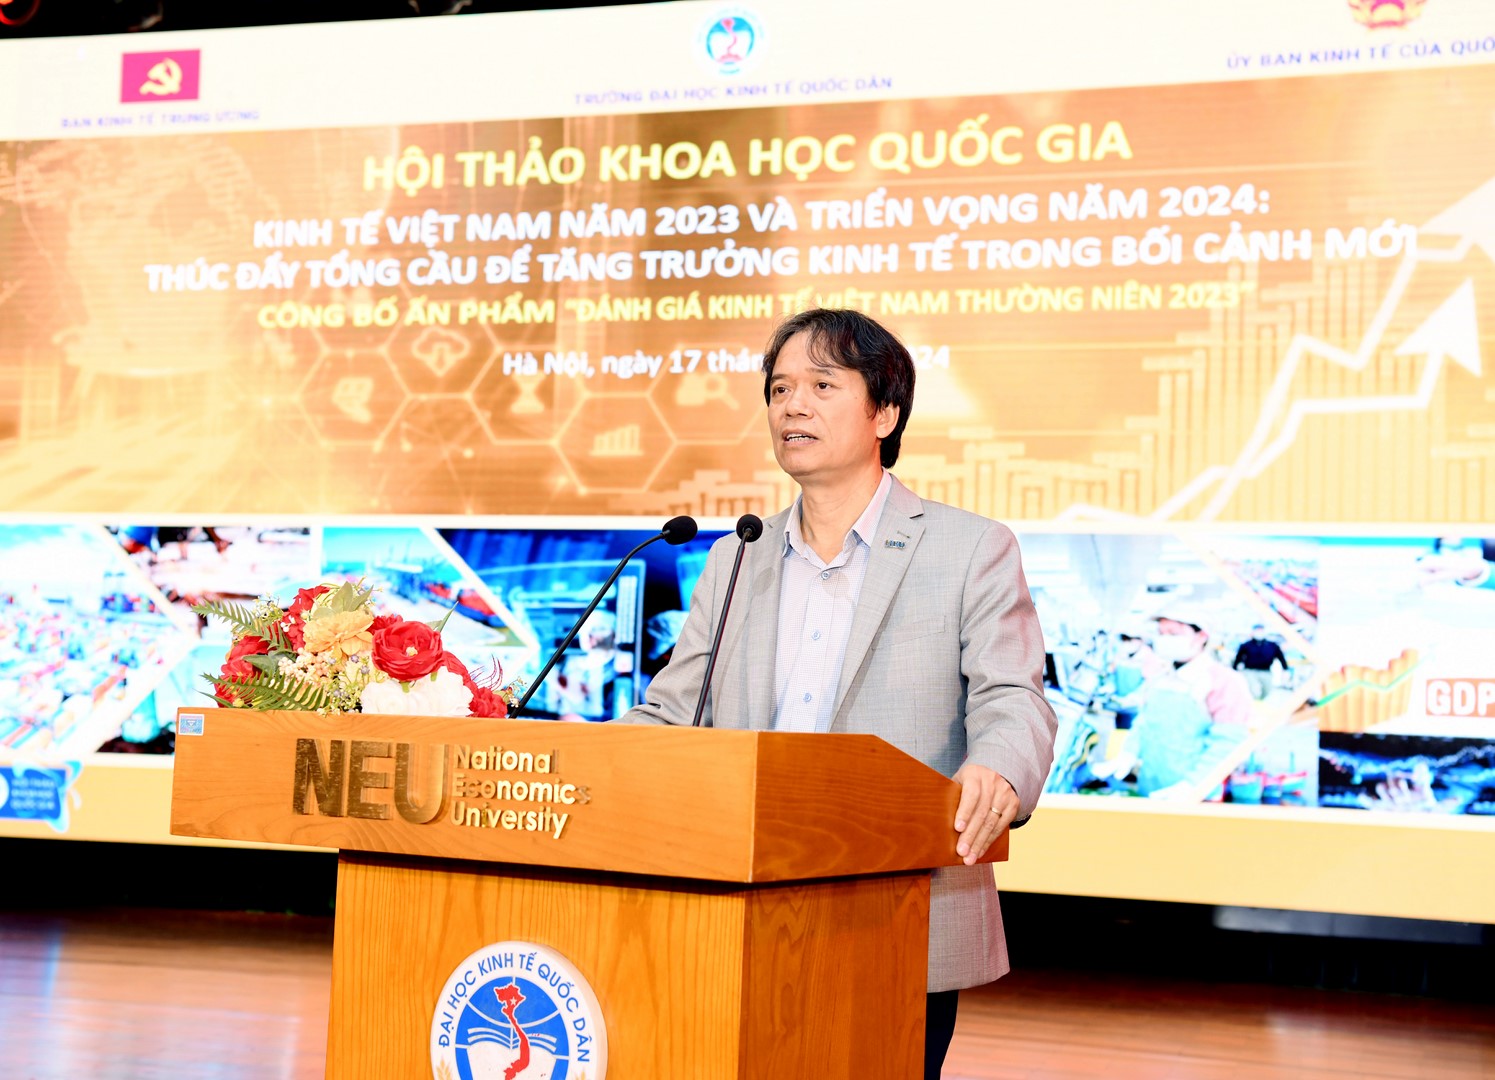 Hội thảo khoa học quốc gia: Kinh tế Việt Nam năm 2023 và triển vọng năm 2024 - Thúc đẩy tổng cầu để tăng trưởng kinh tế trong bối cảnh mới. Ảnh: NEU